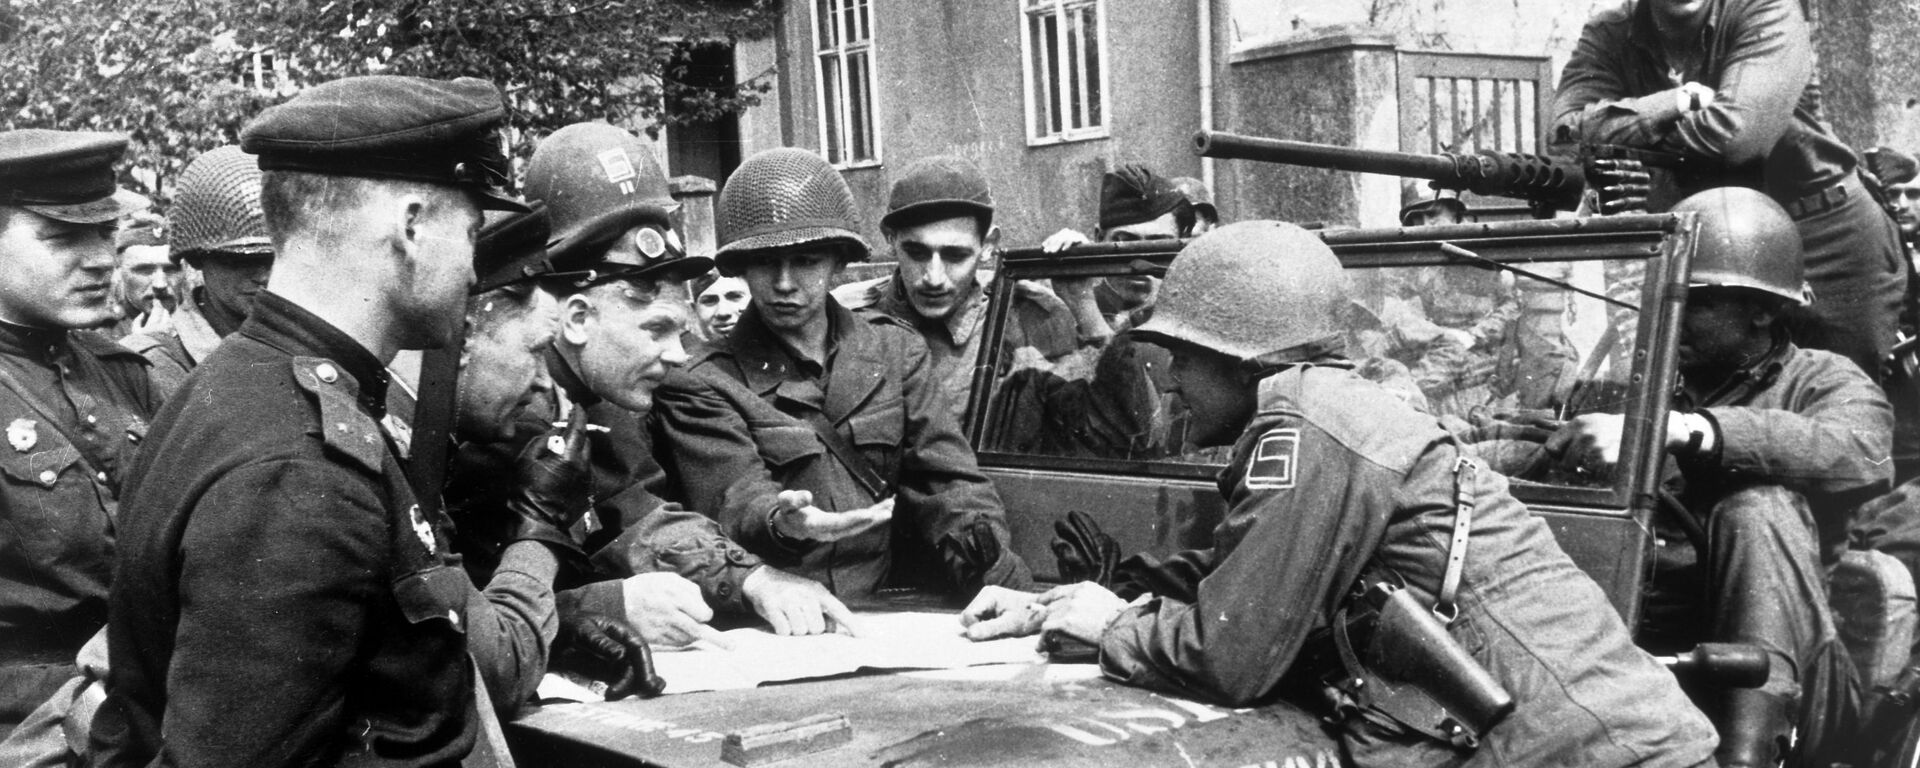 25 апреля 1945 года в районе Торгау на Эльбе войска 1-го Украинского фронта встретились с войсками 1-й армии США. - Sputnik Латвия, 1920, 06.05.2020